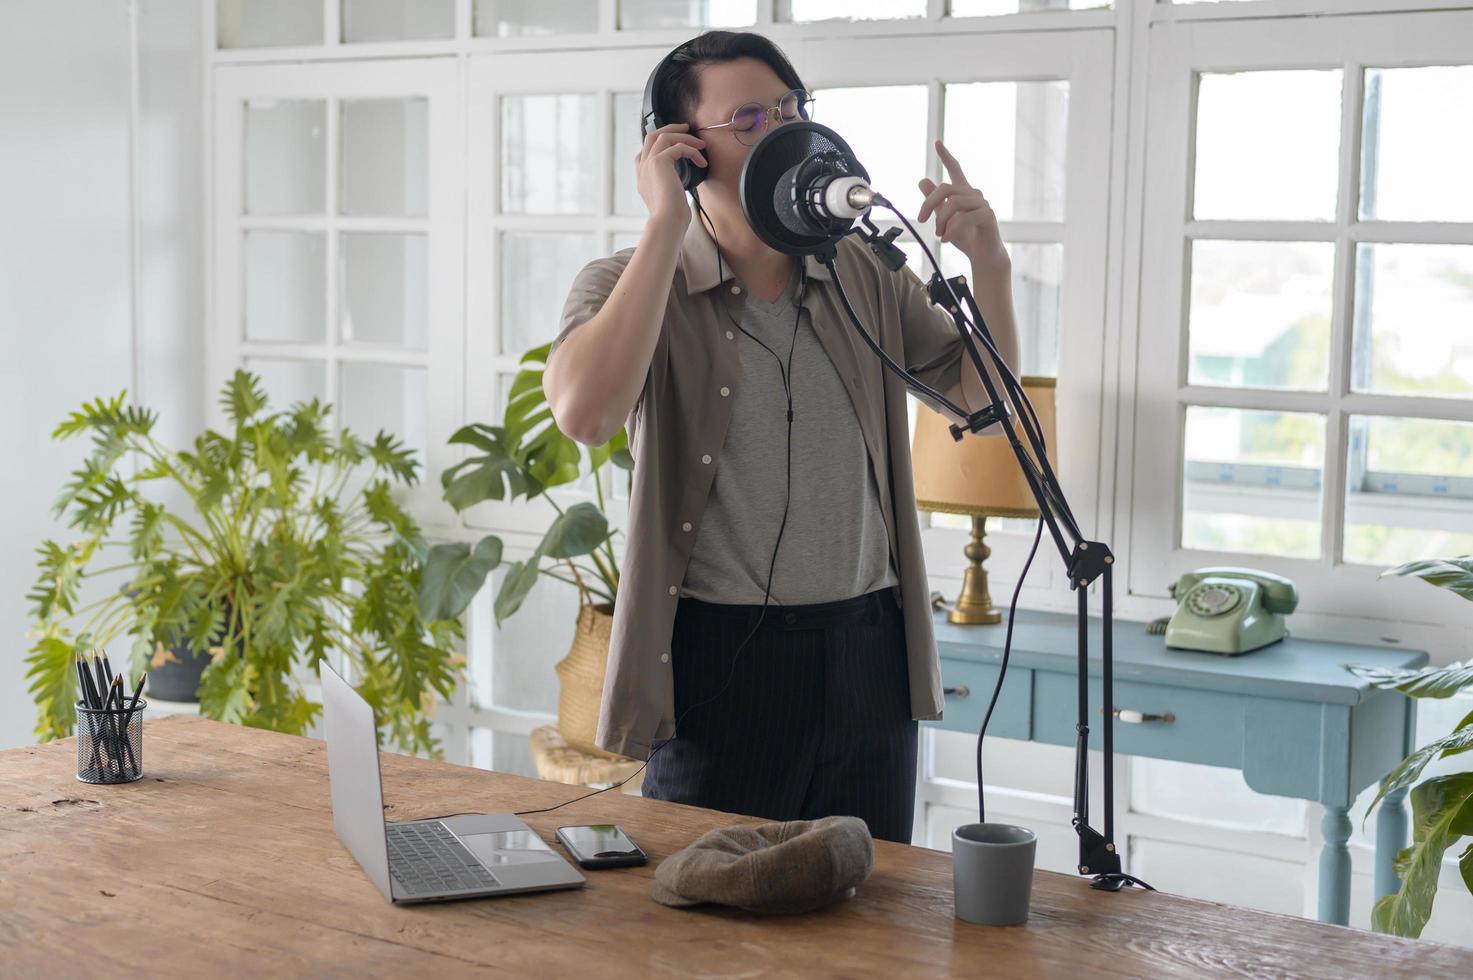 un músico está grabando una nueva canción en un estudio casero foto